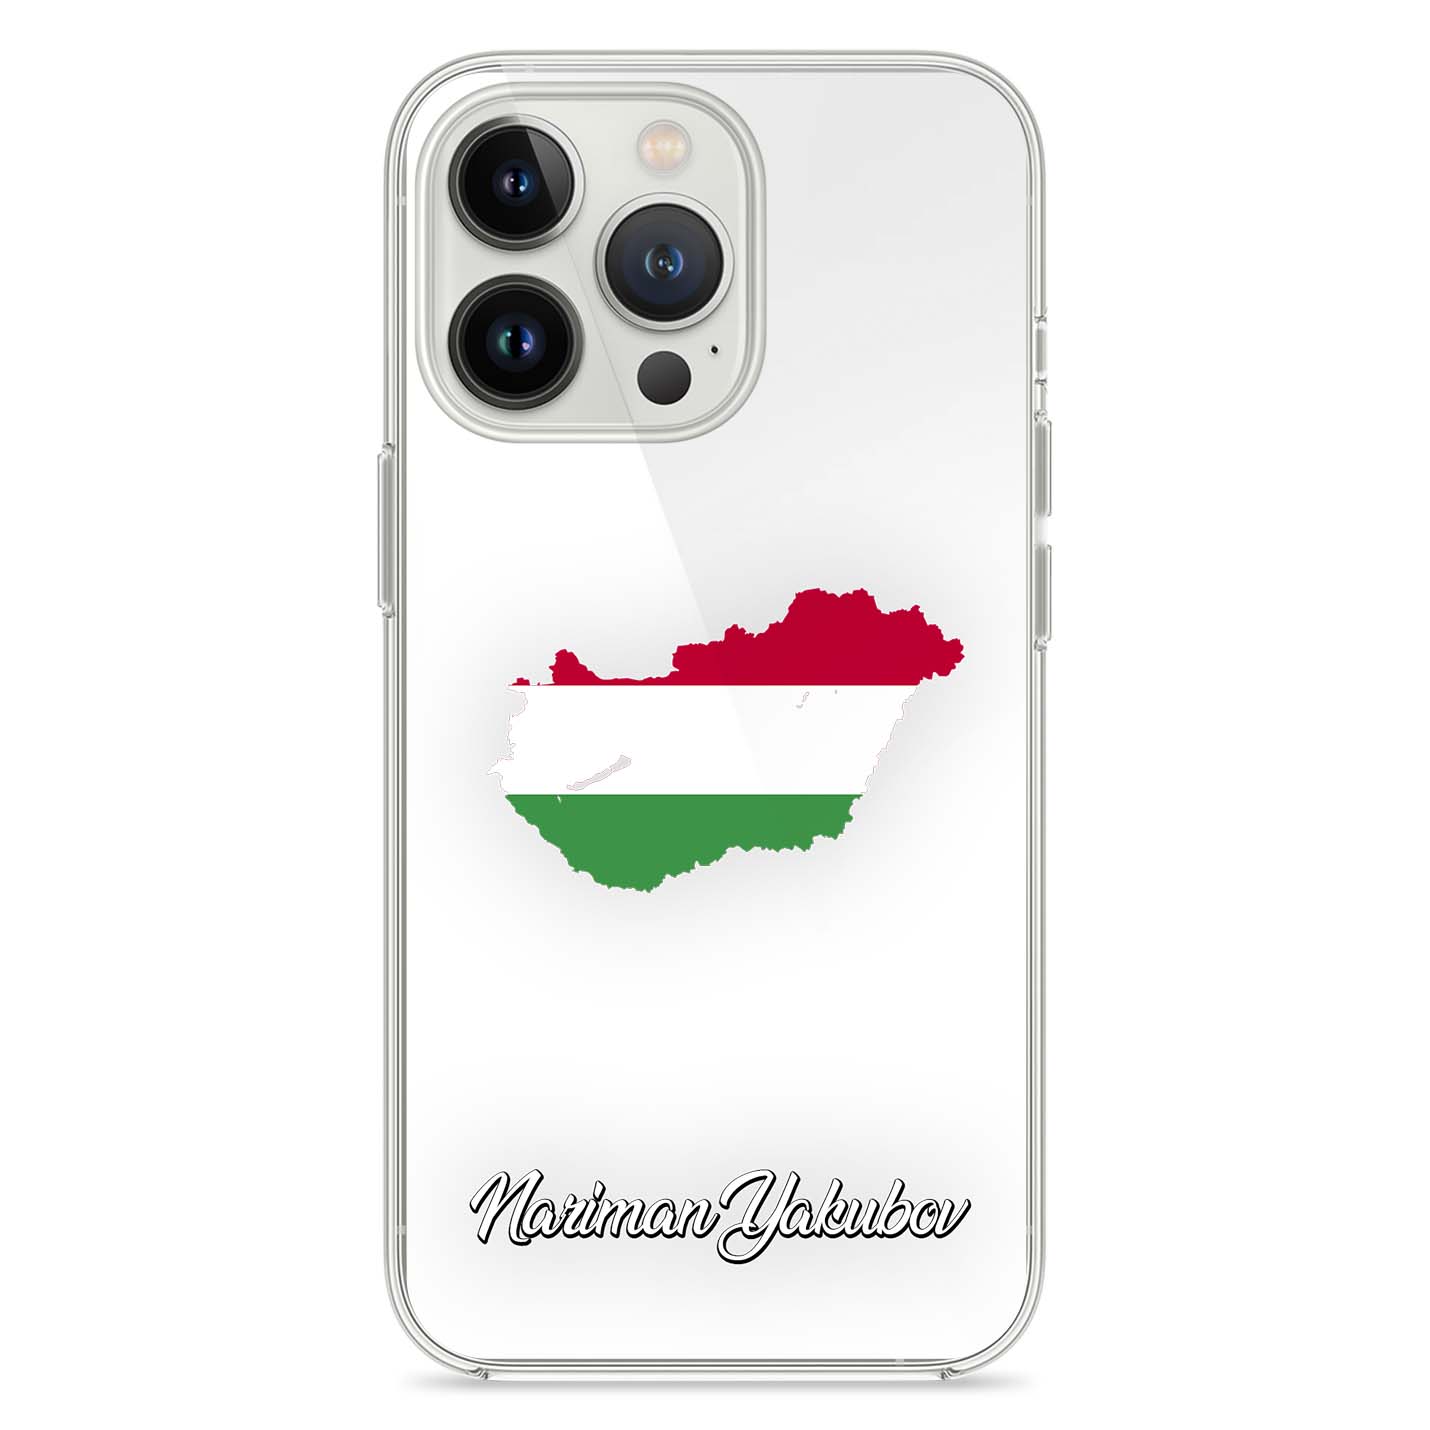 Handyhüllen mit Flagge - Ungarn - 1instaphone